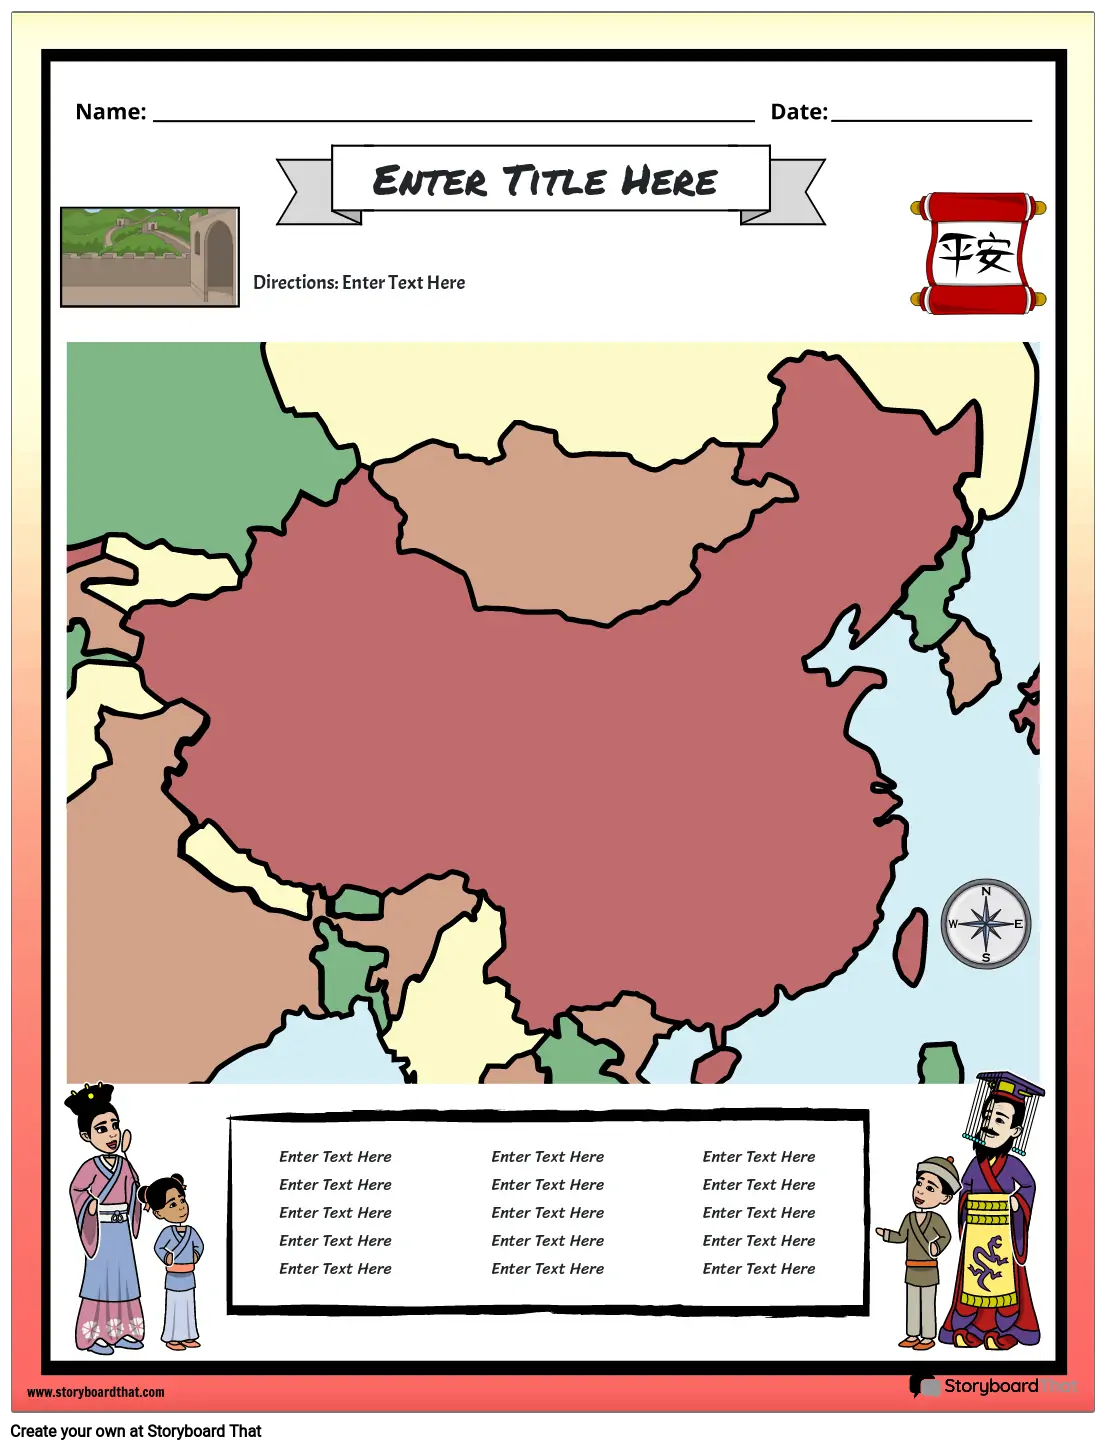 מפת סין העתיקה